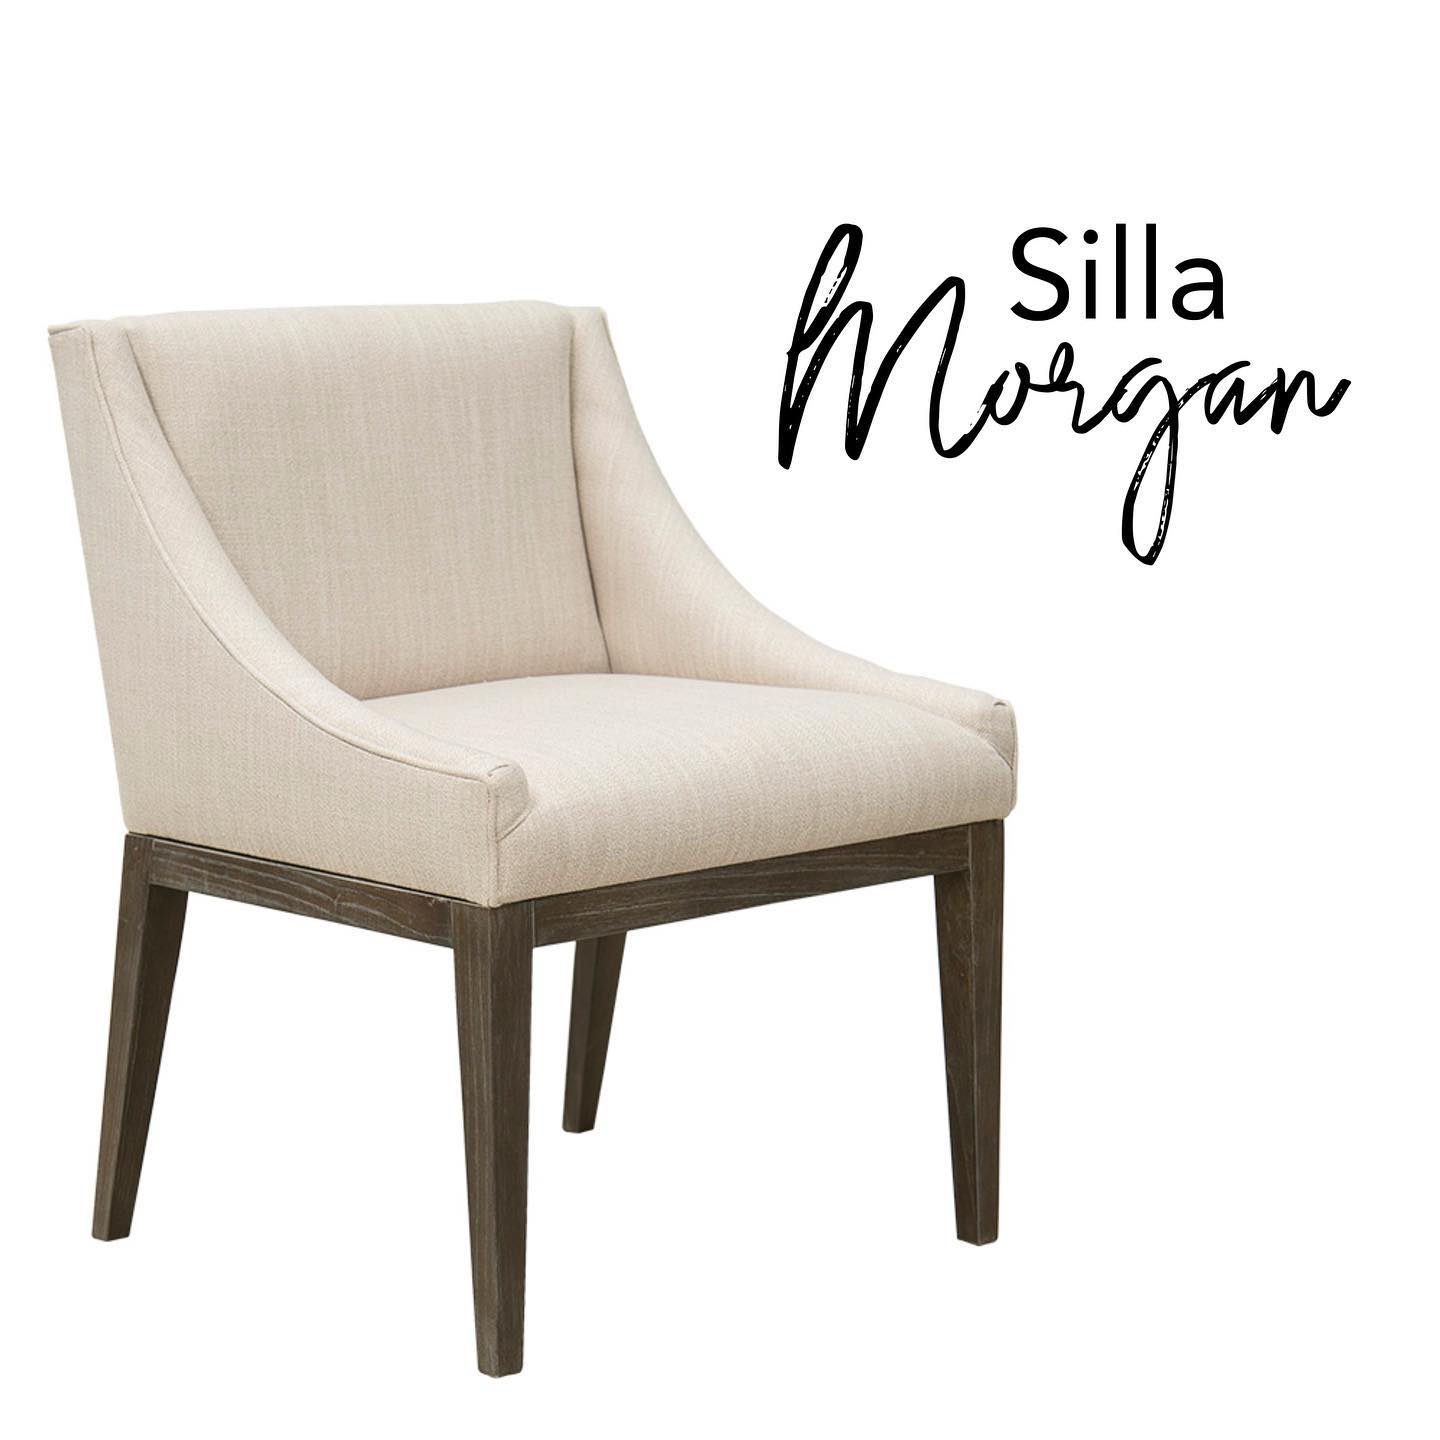 EM - Silla Morgan